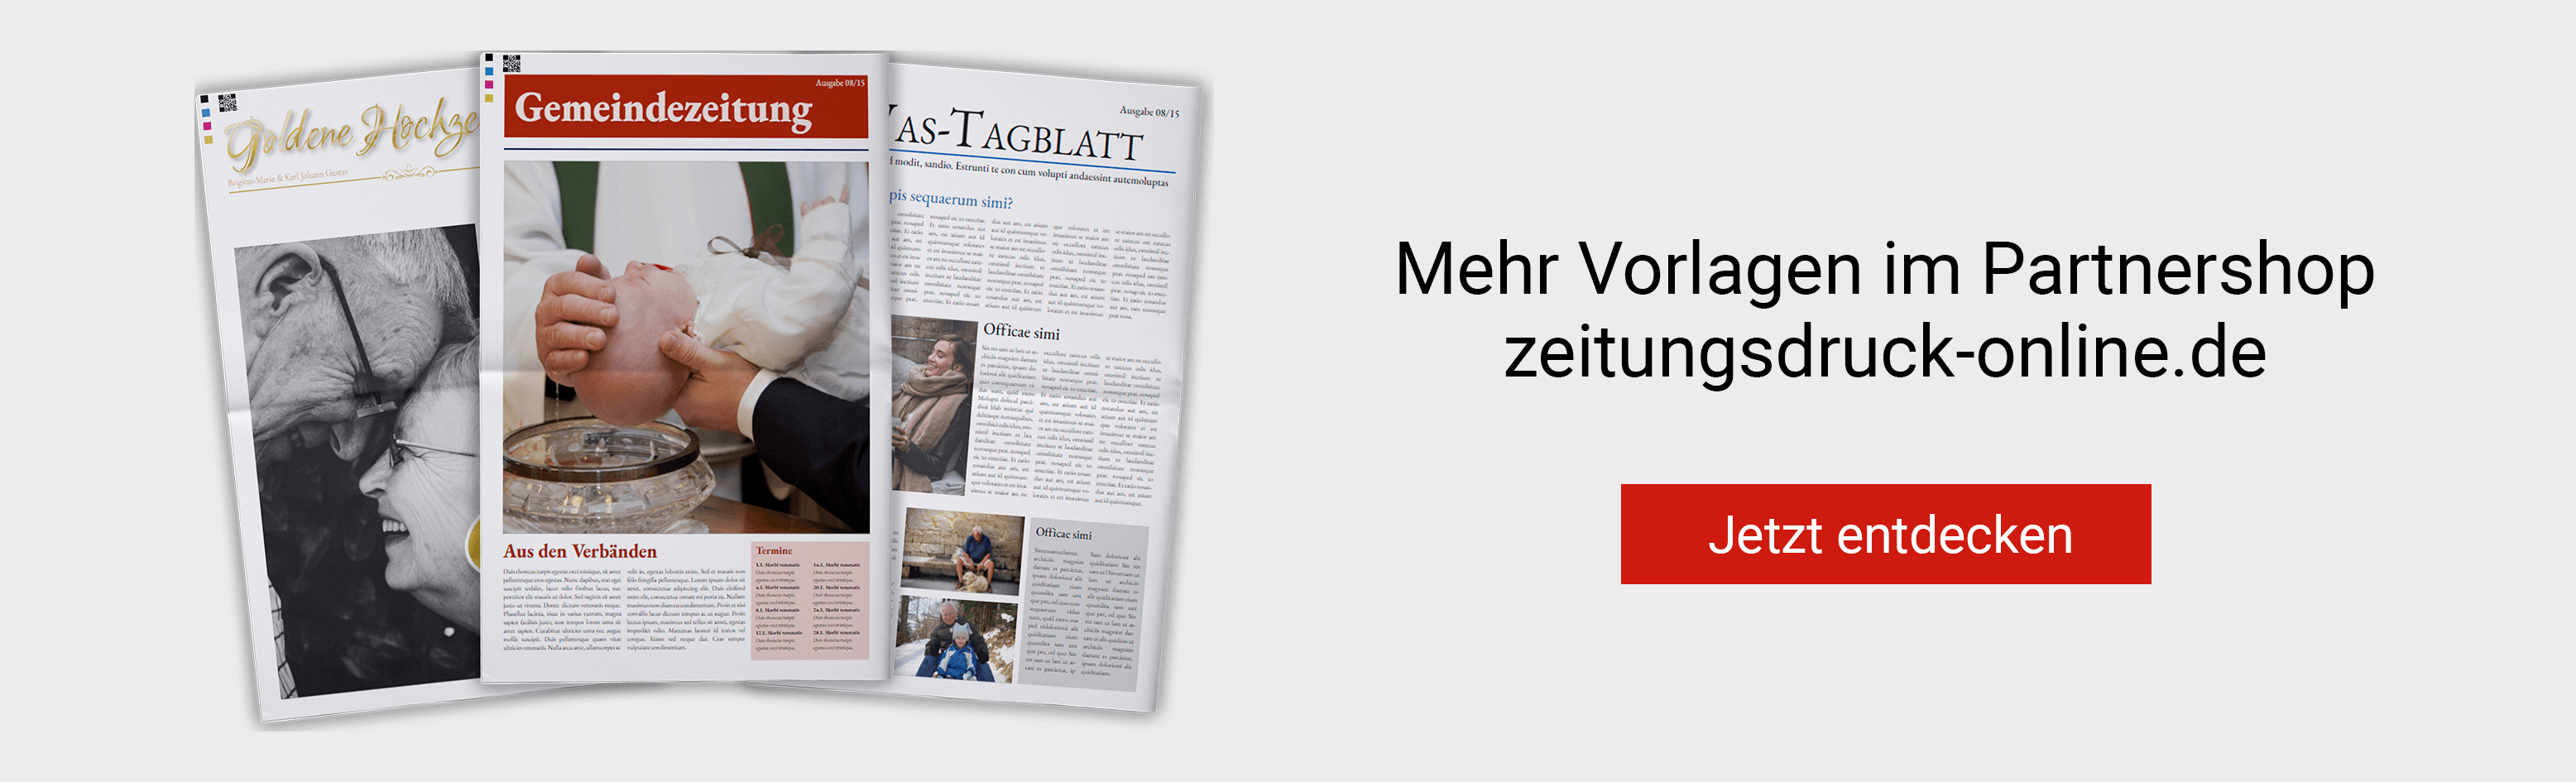 Mehr Vorlagen für Zeitungen auf zeitungsdruck-online.de